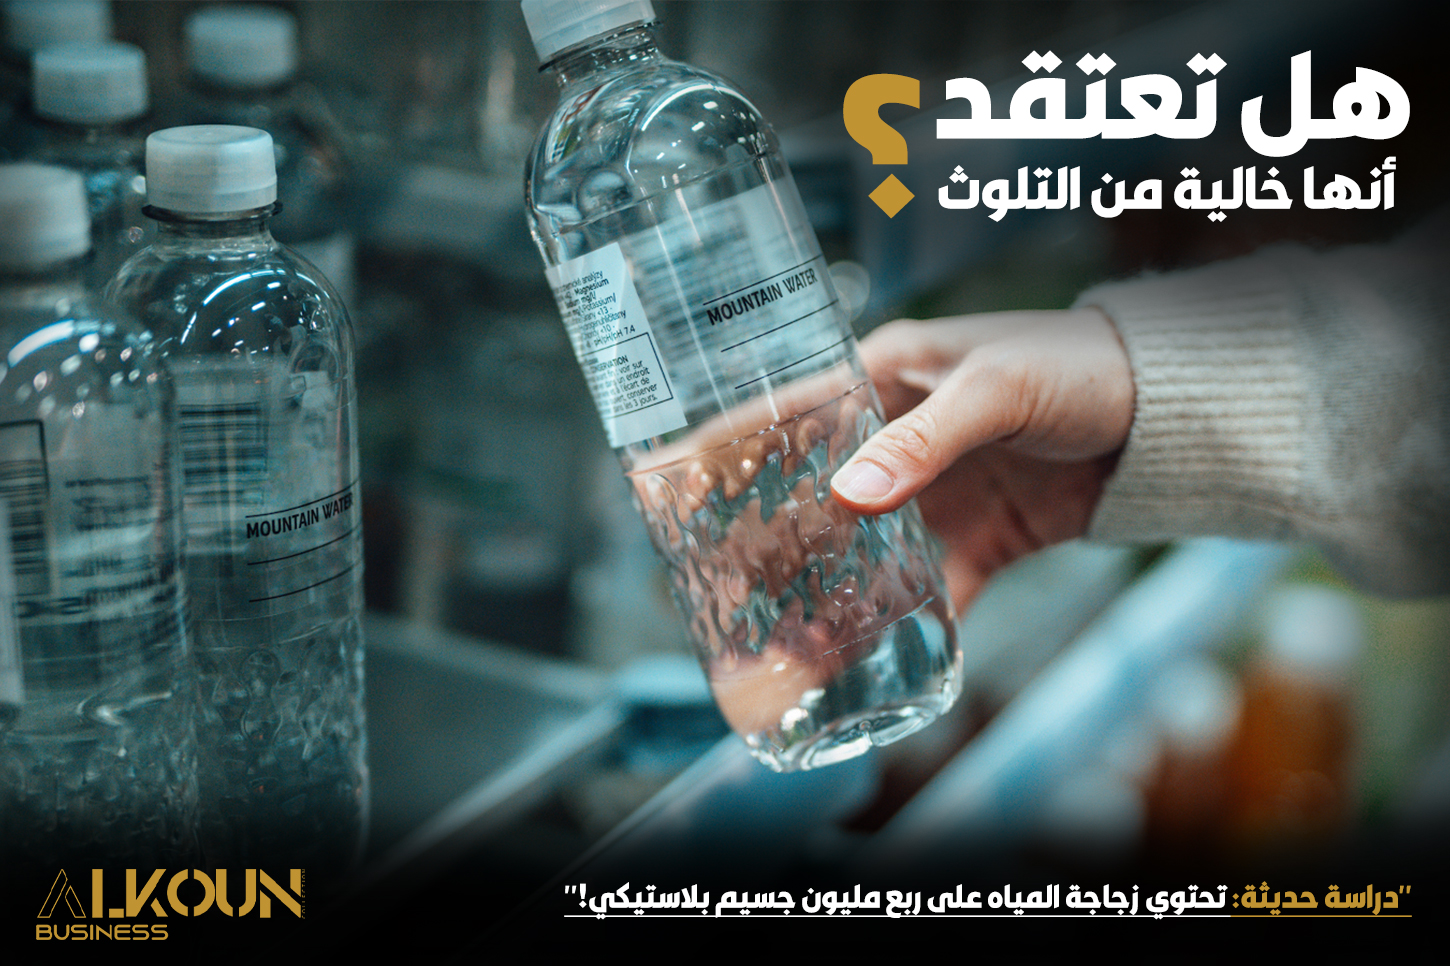 "دراسة حديثة: تحتوي زجاجة المياه على ربع مليون جسيم بلاستيكي!"